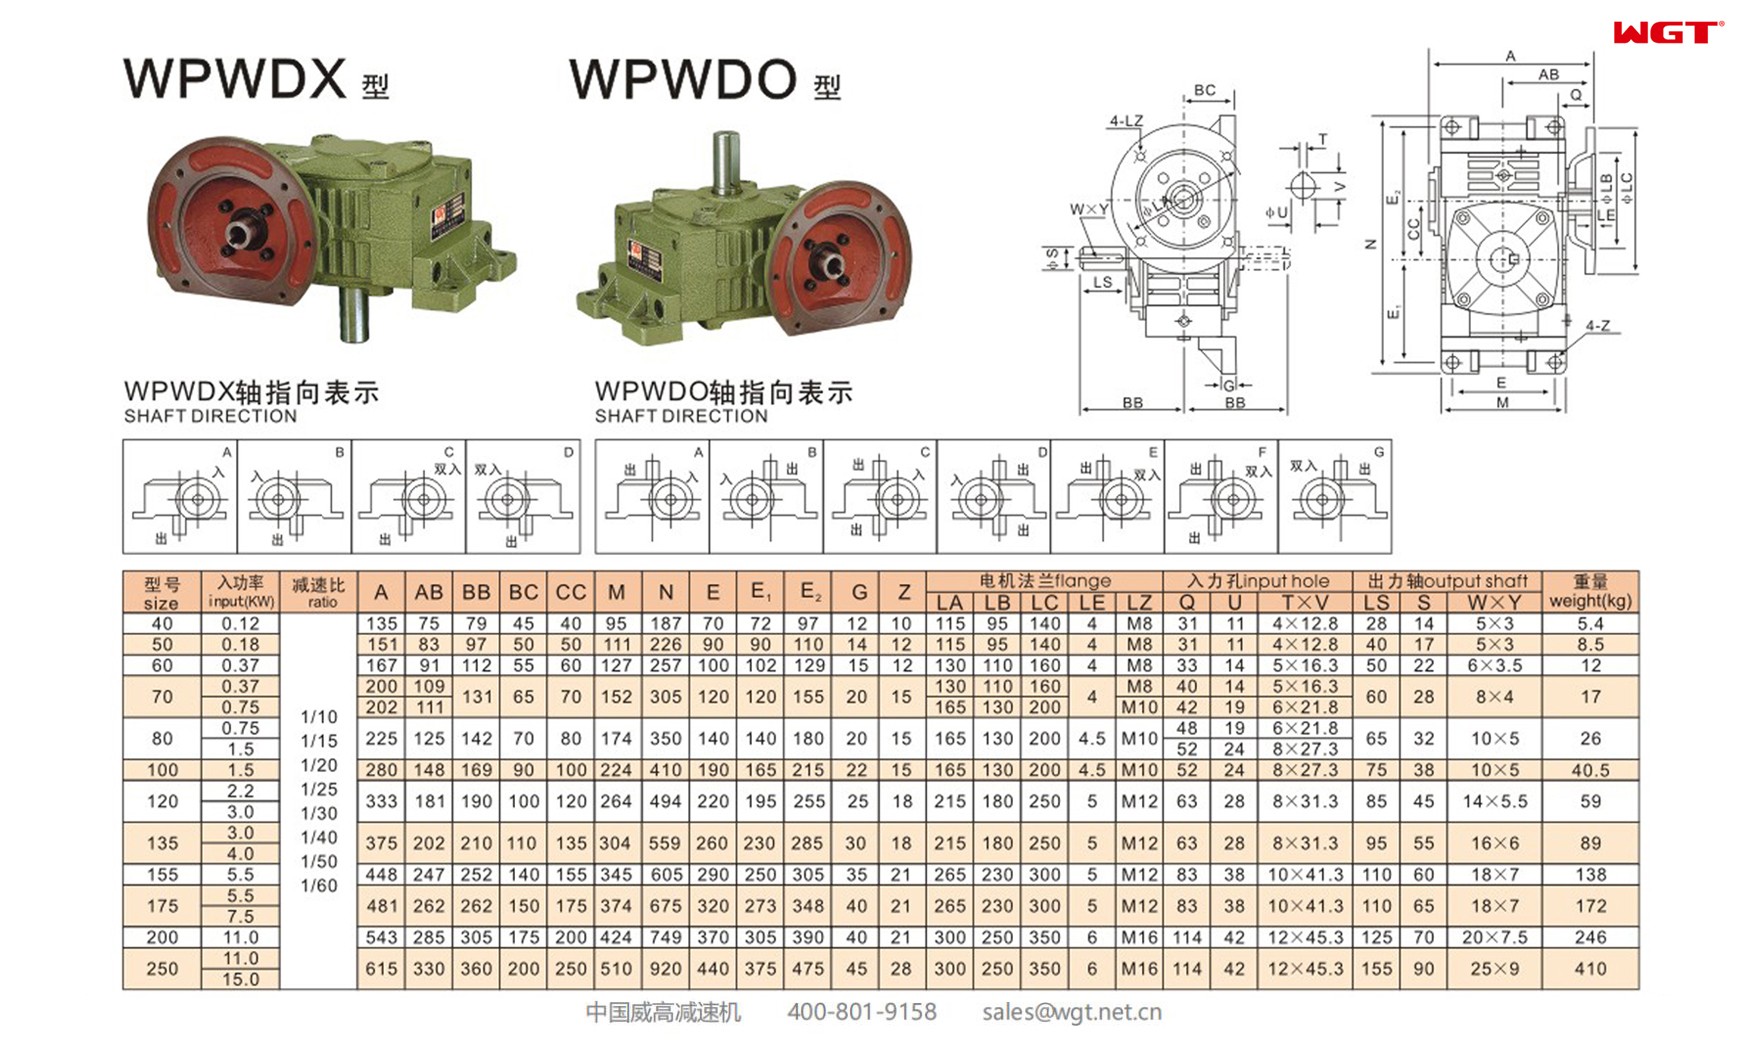 WPWDO120 worm gear reducer universal speed reducer  